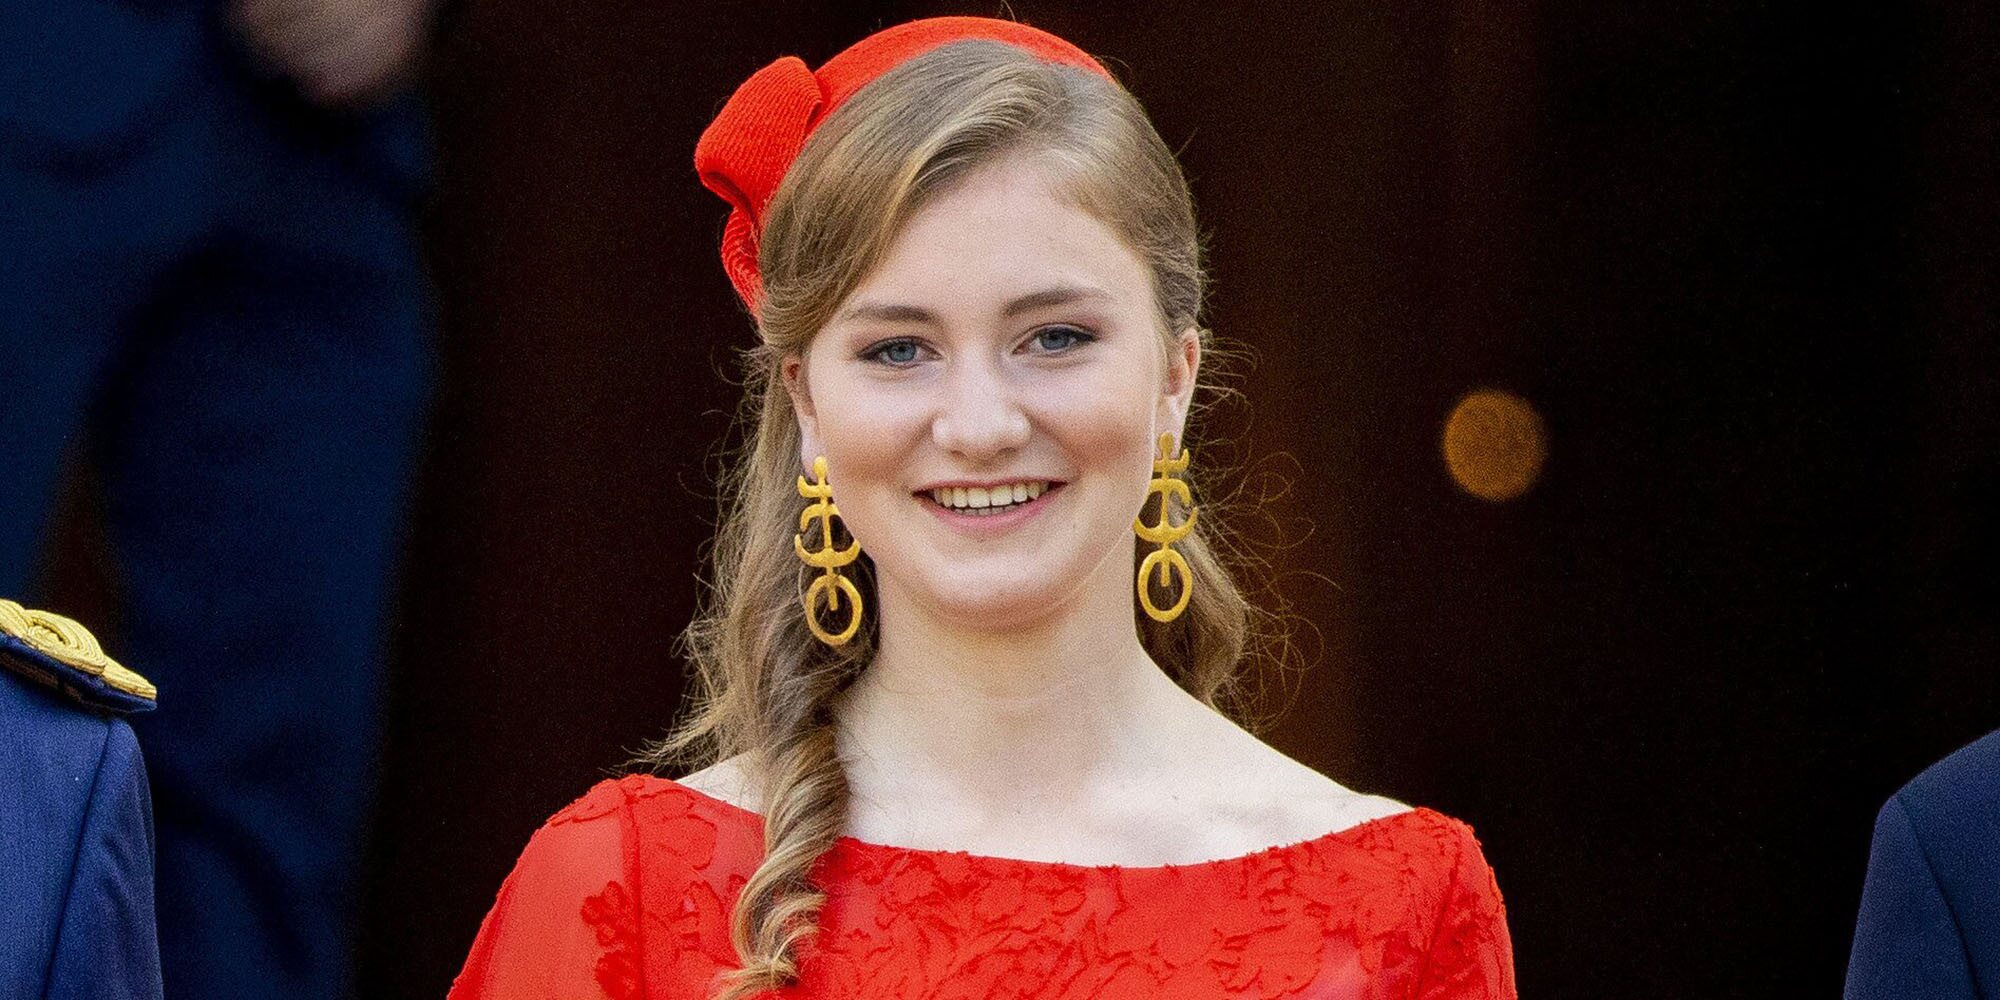 La Princesa Isabel de Bélgica estudiará Historia y Política en la prestigiosa universidad de Oxford